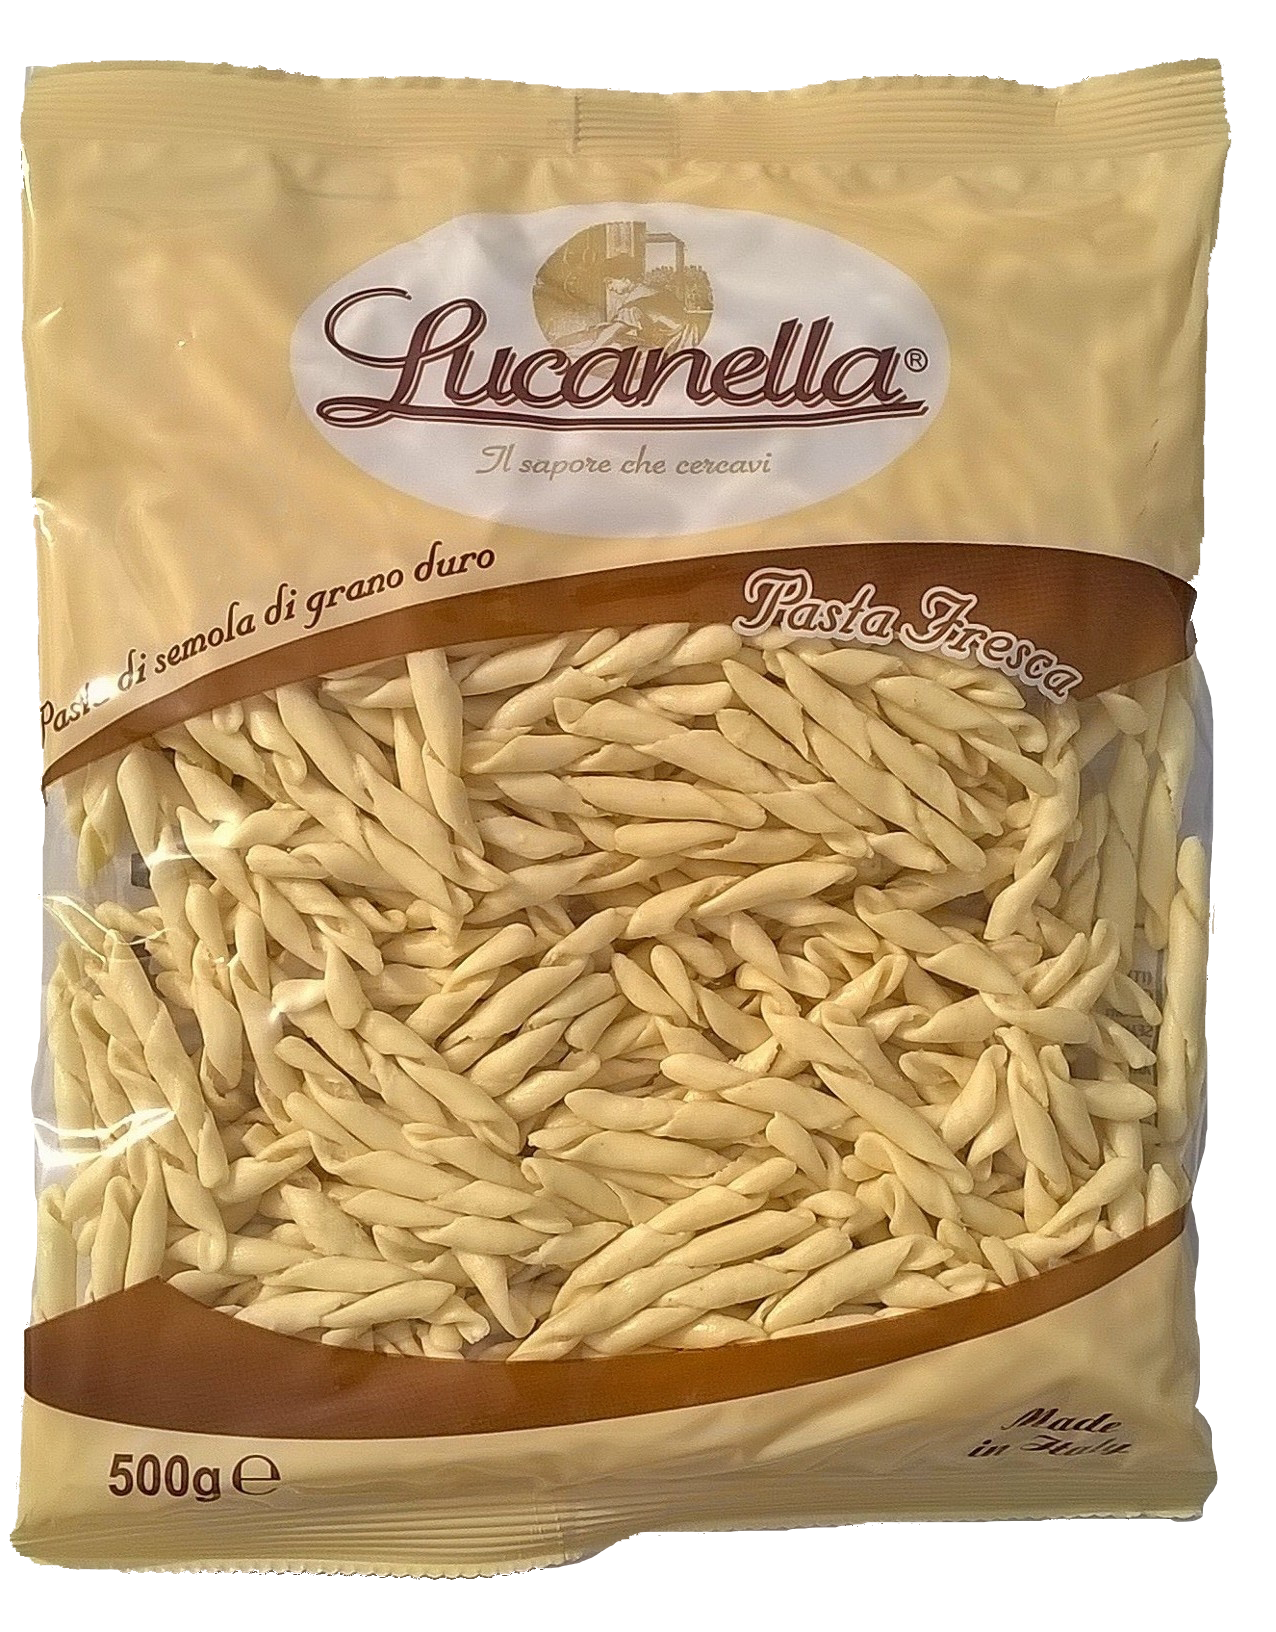 Pasta Fresca - Pastificio Lucanella. Il sapore che cercavi.